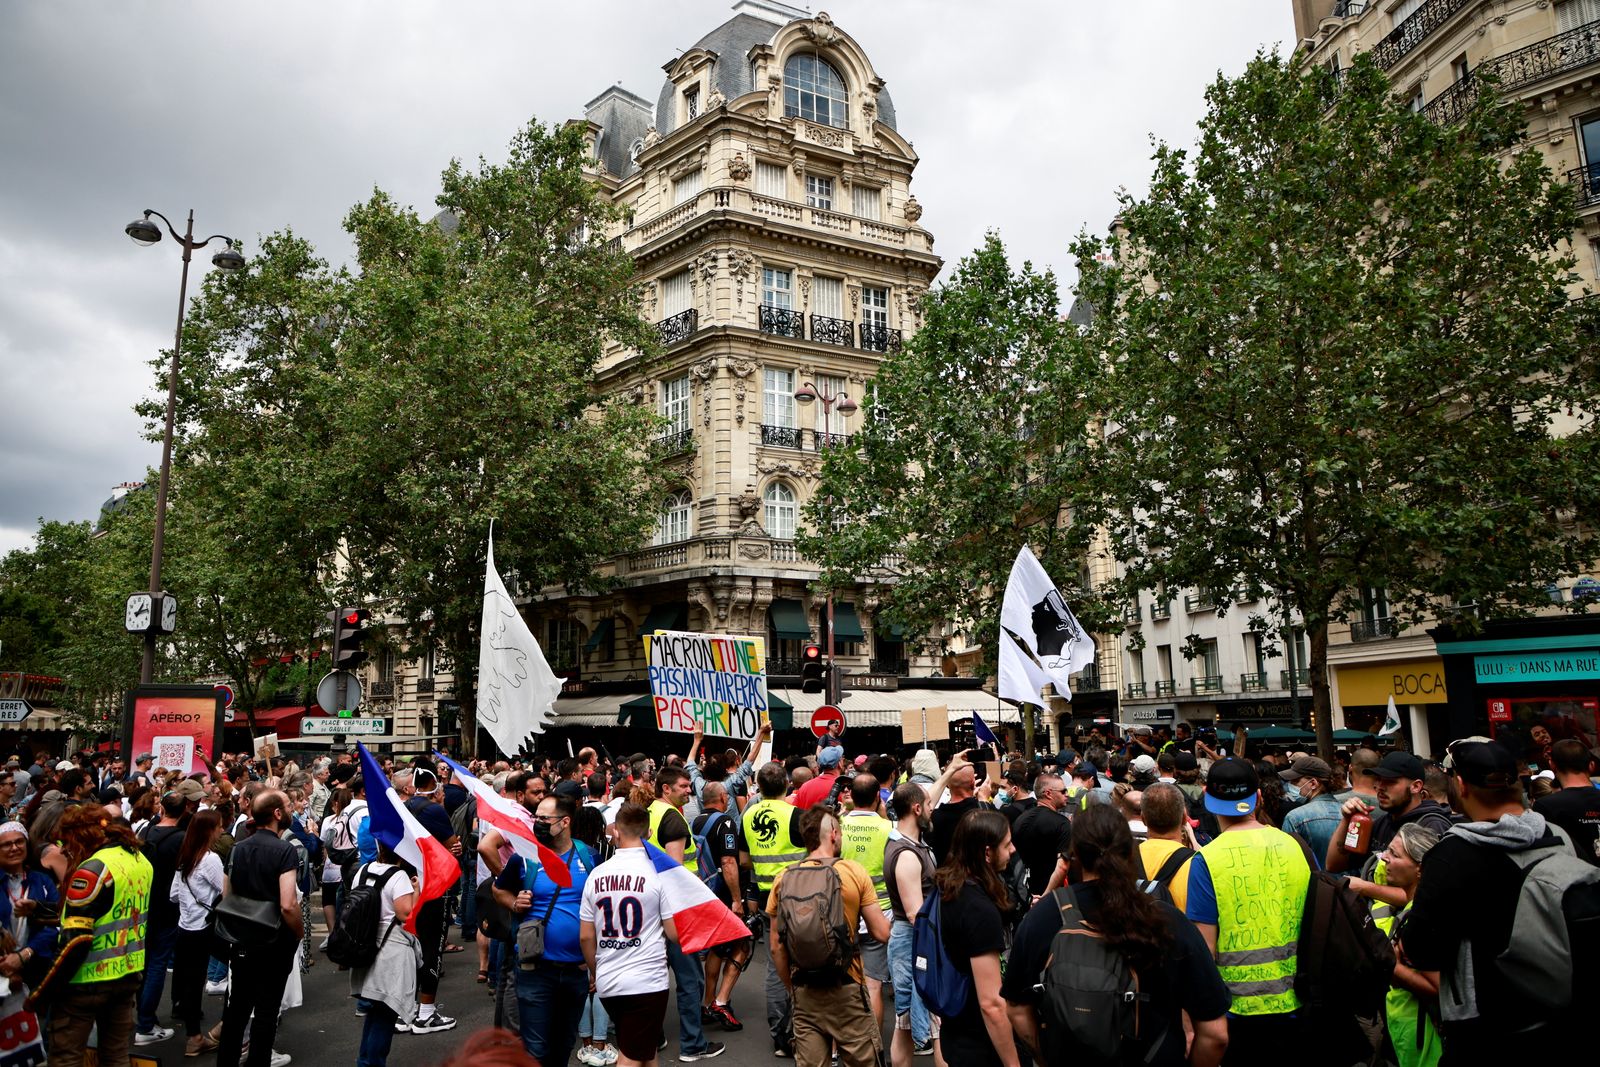 مظاهرة ضد الإجراءات الجديدة لمواجهة تفشي فيروس كورونا في باريس وفرض الشهادة الصحية 31 يوليو 2021 - REUTERS